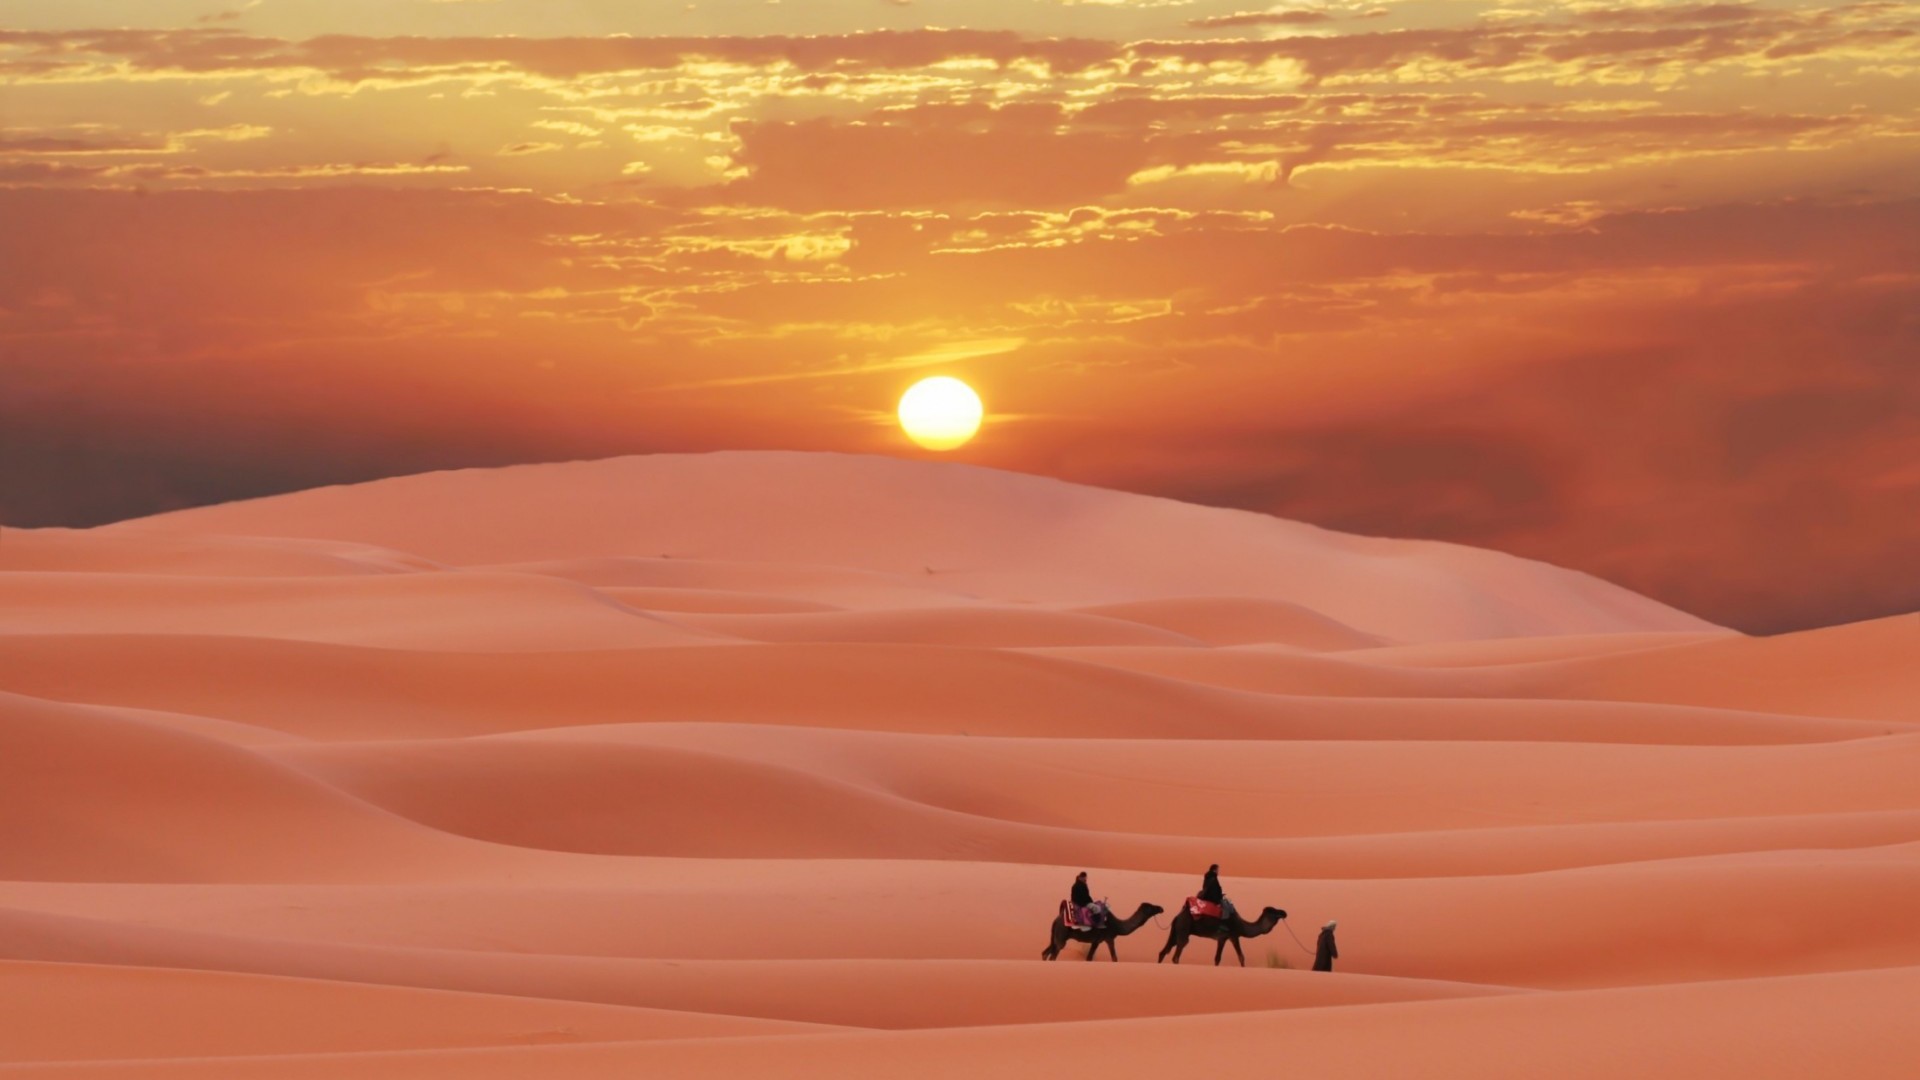 landscape, sunset, sand, desert, camels, red